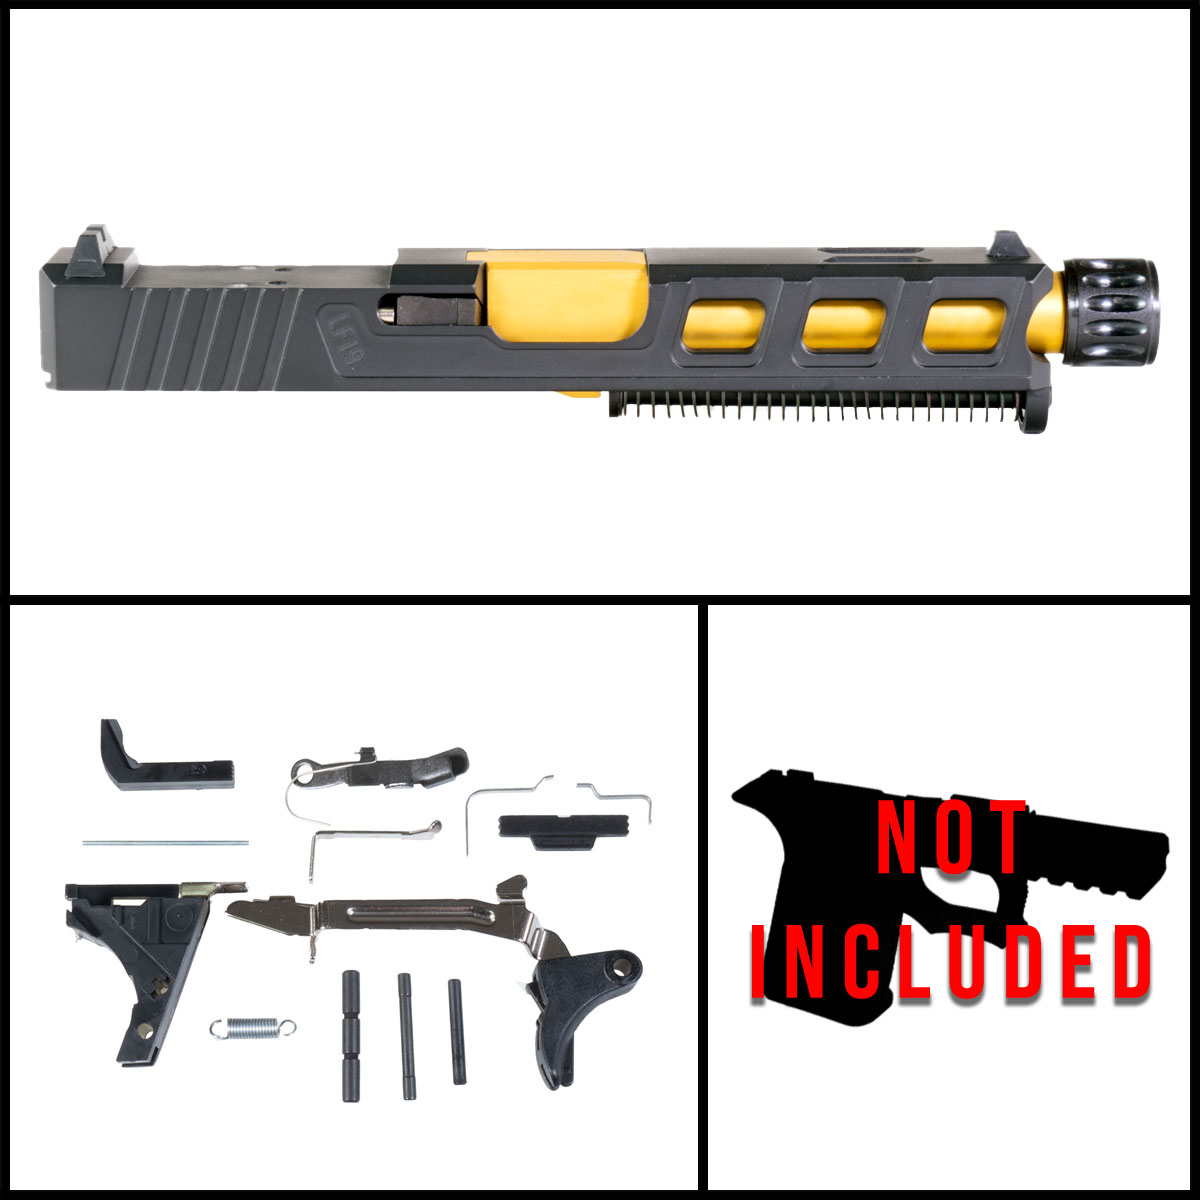 DTT 'Auge' 9mm Full Pistol Build Kit (Everything Minus Frame) - Glock 19 Gen 1-3 Compatible